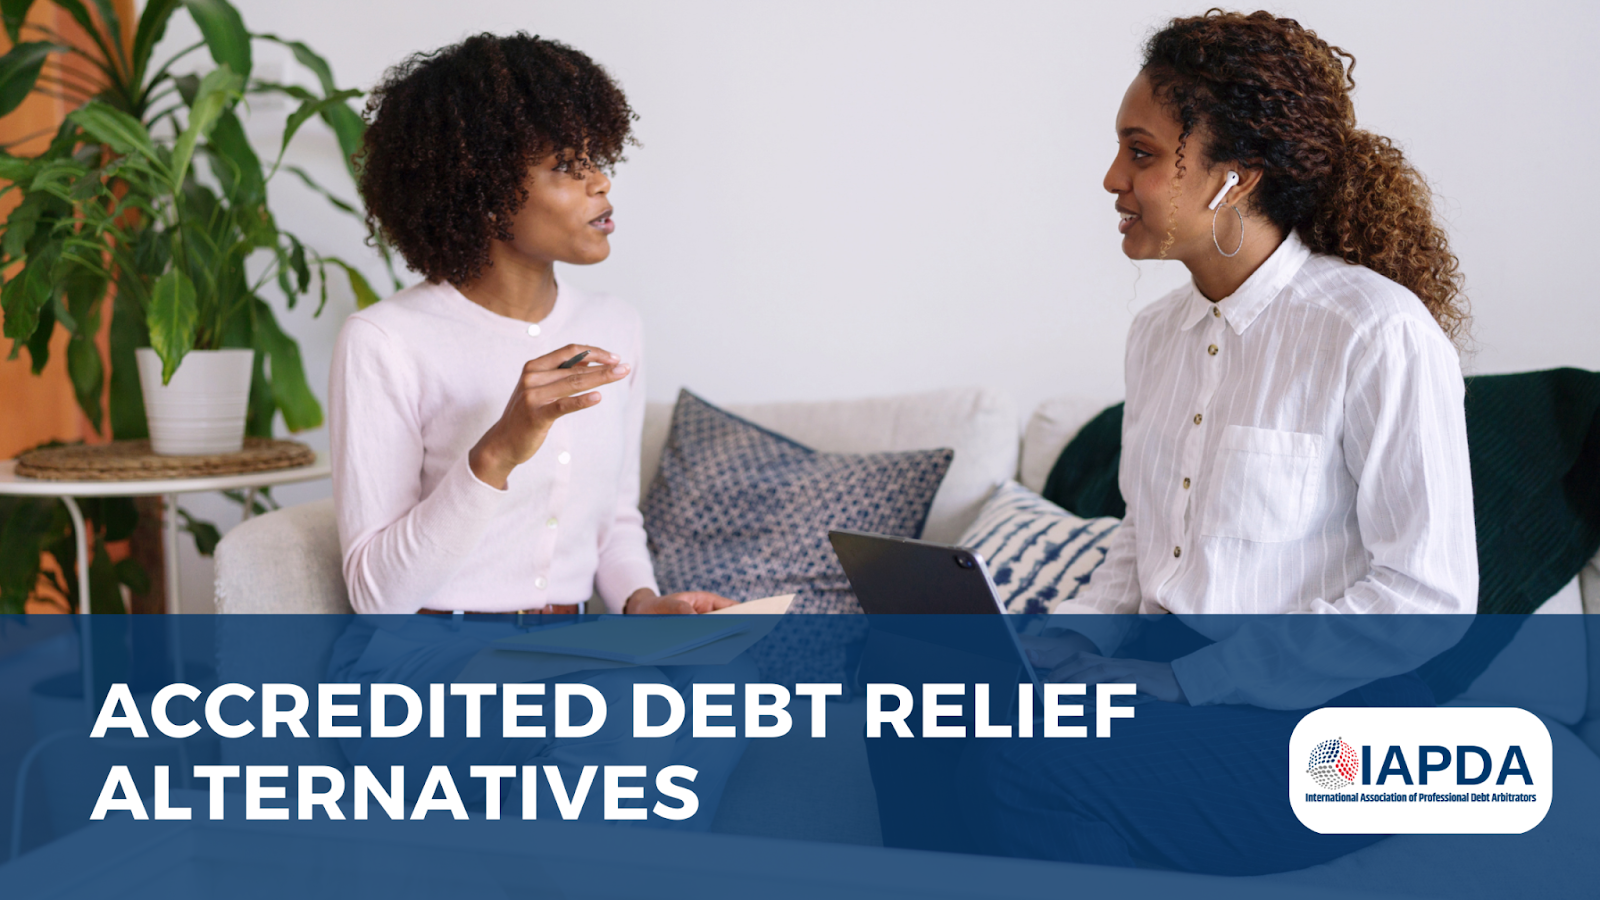 Debt relief professionals